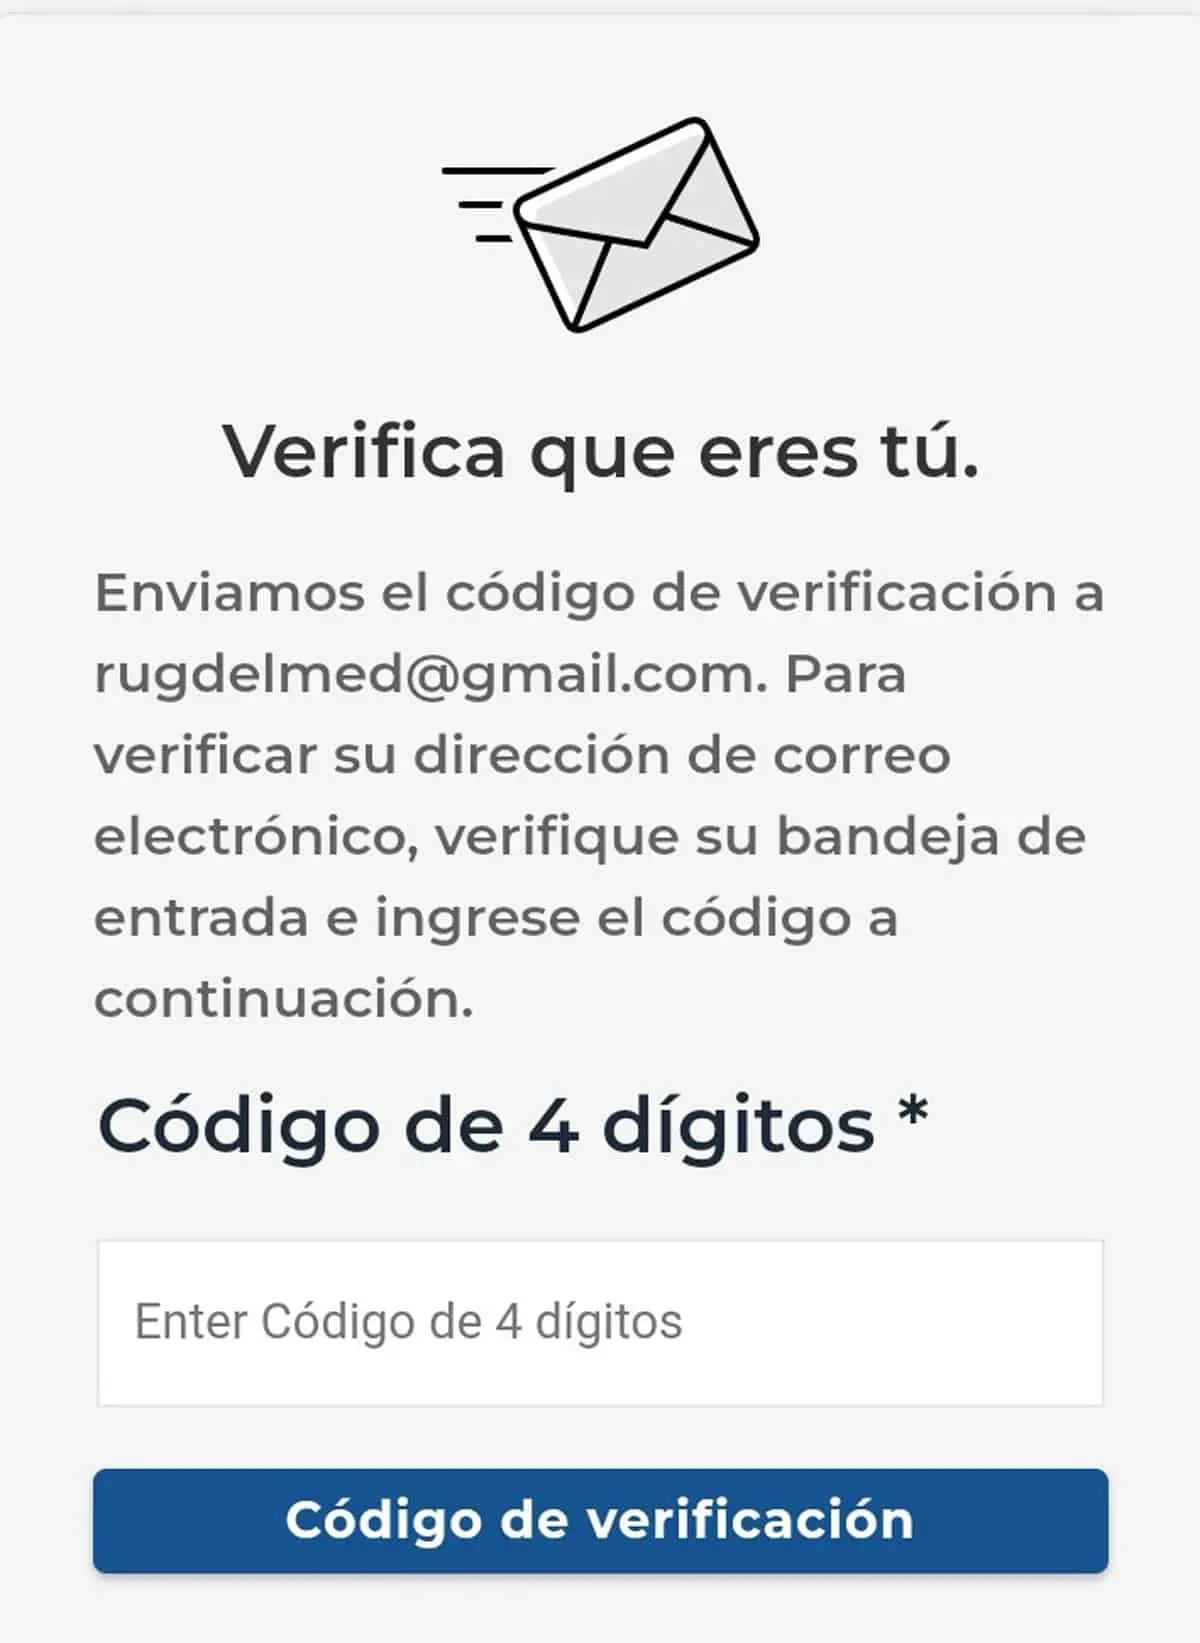 Verifica el correo electrónico para registrarse en Cubamodela